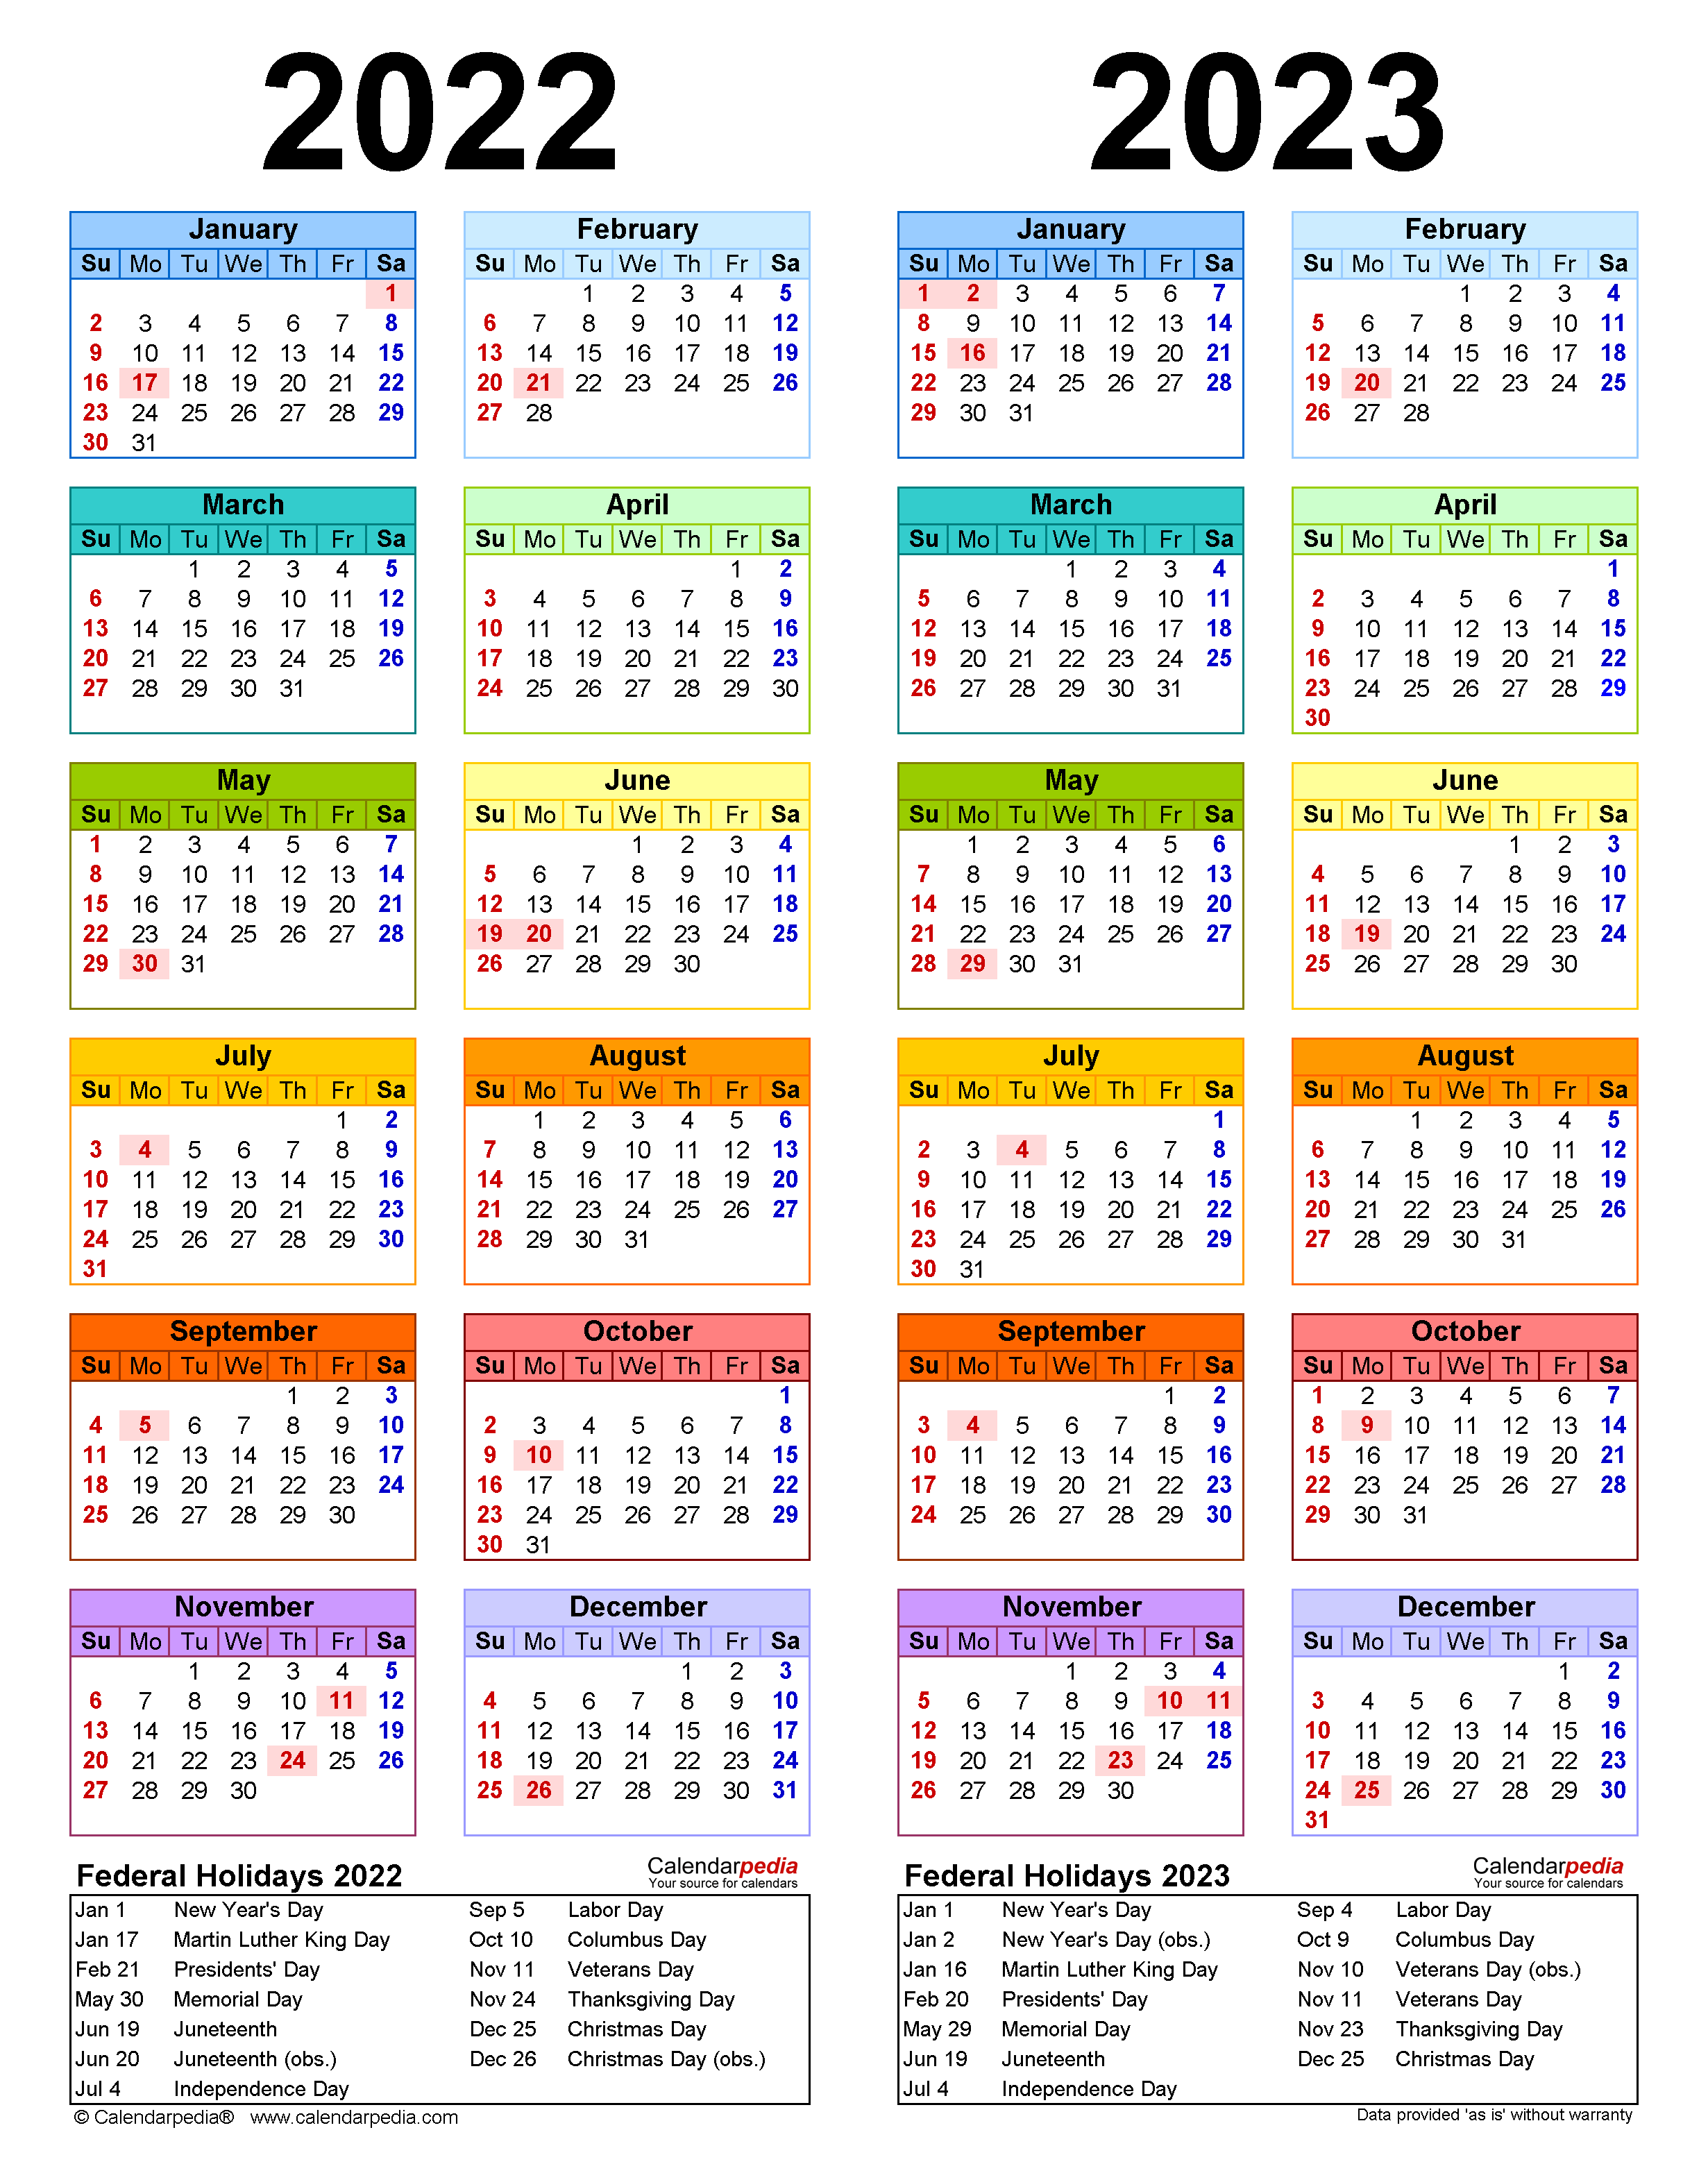 gisd-2022-to-2023-calendar-printable-calendar-2023